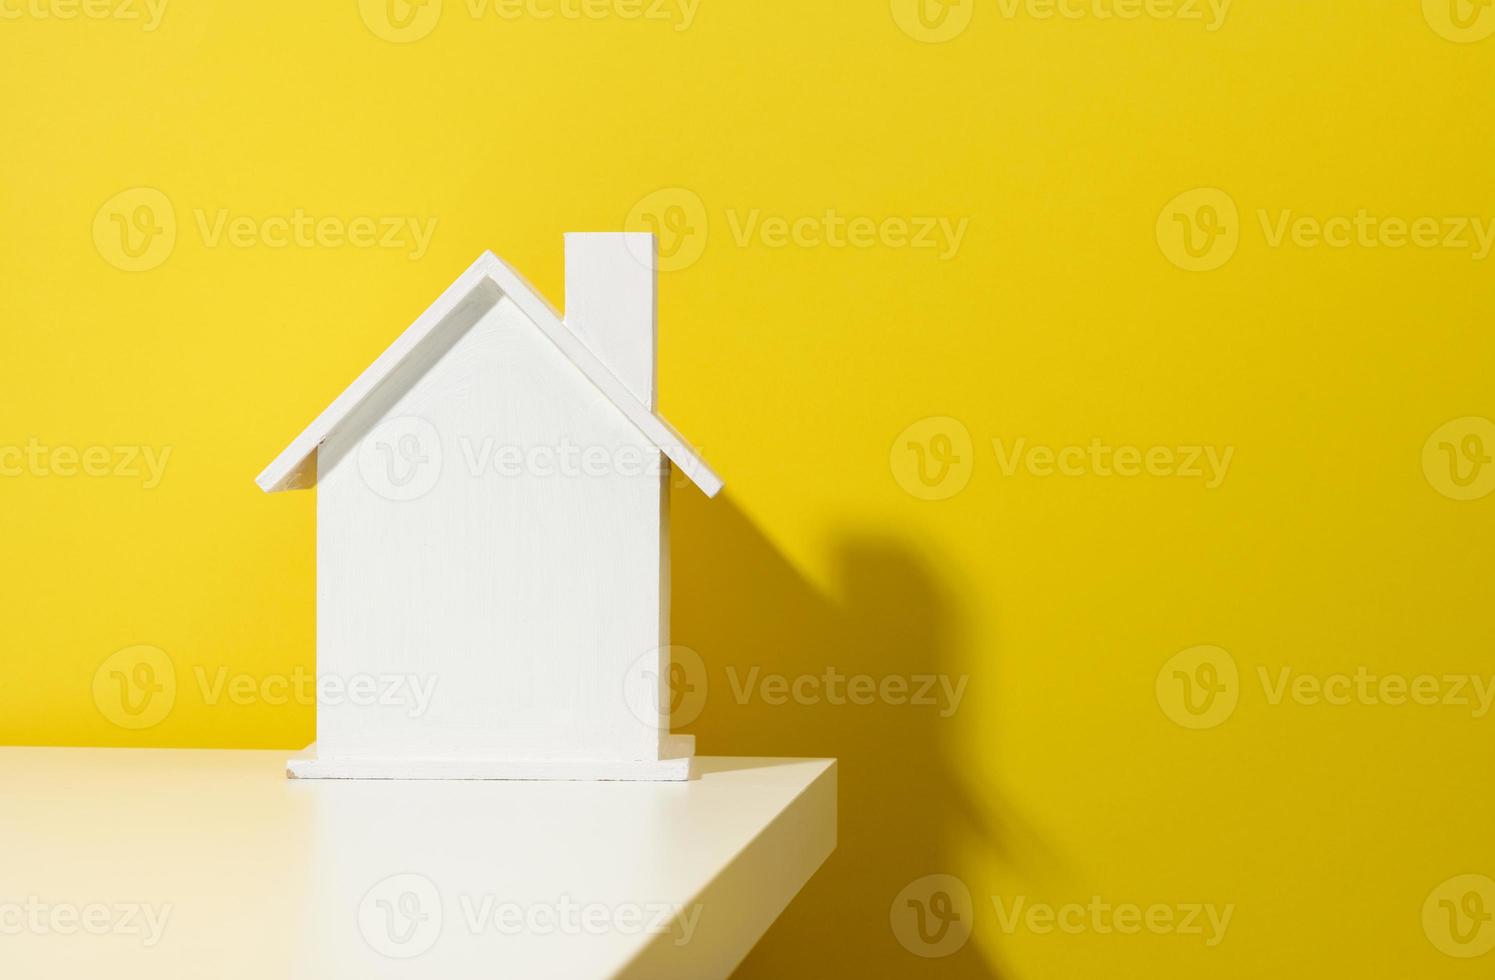 casa de madeira branca sobre um fundo amarelo. aluguel de imóveis, conceito de compra e venda. serviços de corretor de imóveis foto